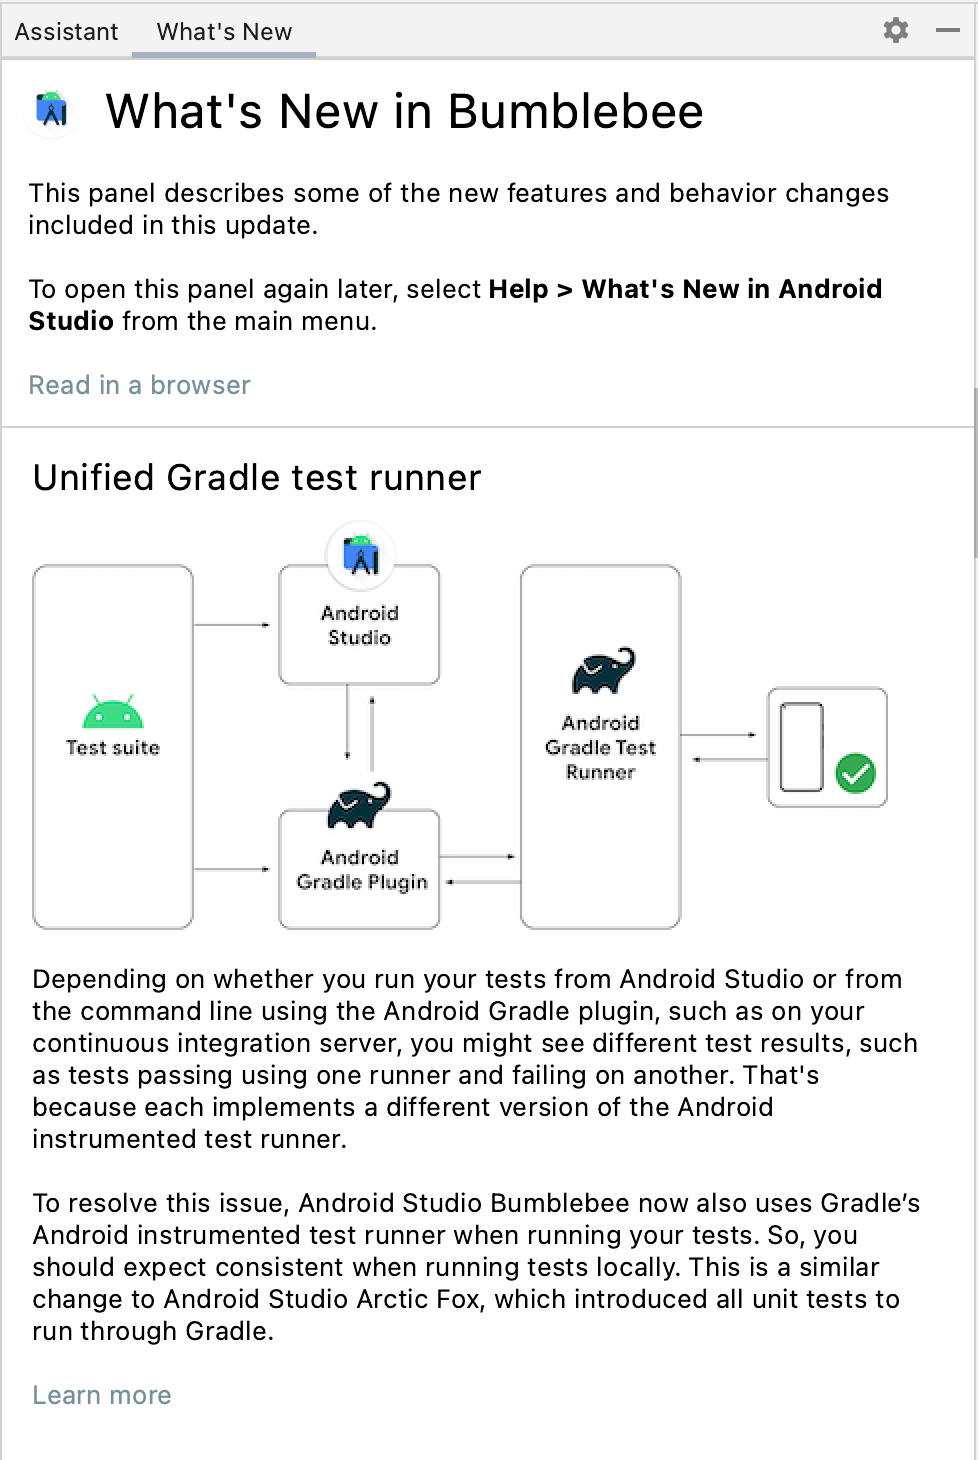 この画像は、Android Studio のアップデートに関する情報を提供する [What's New] ペインの画像。